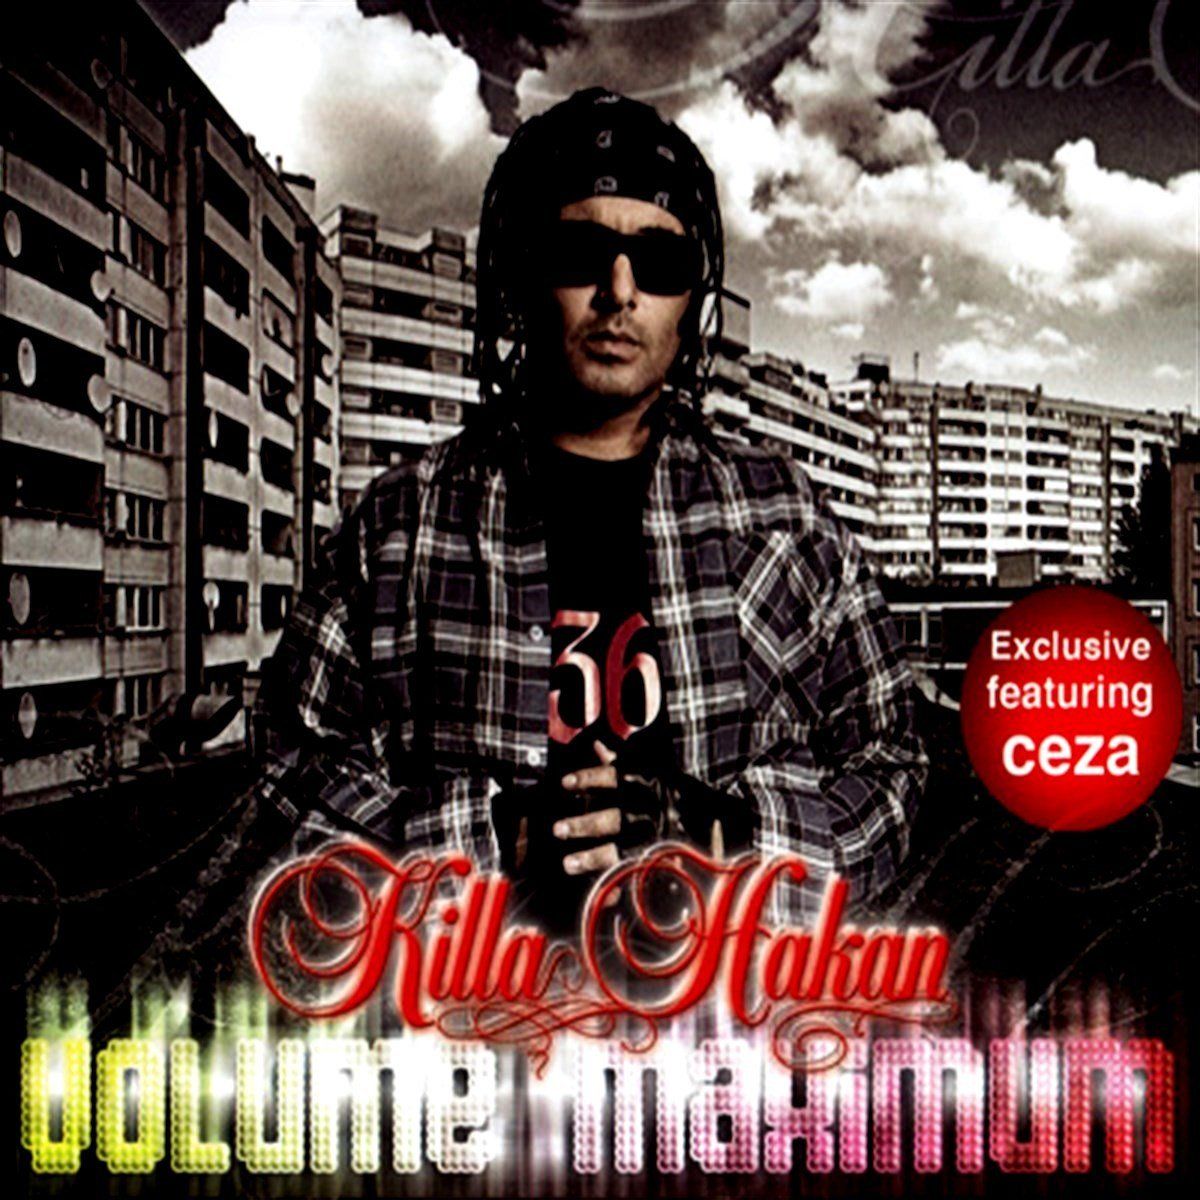 KİLLA HAKAN - VOLUME MAXIMUM